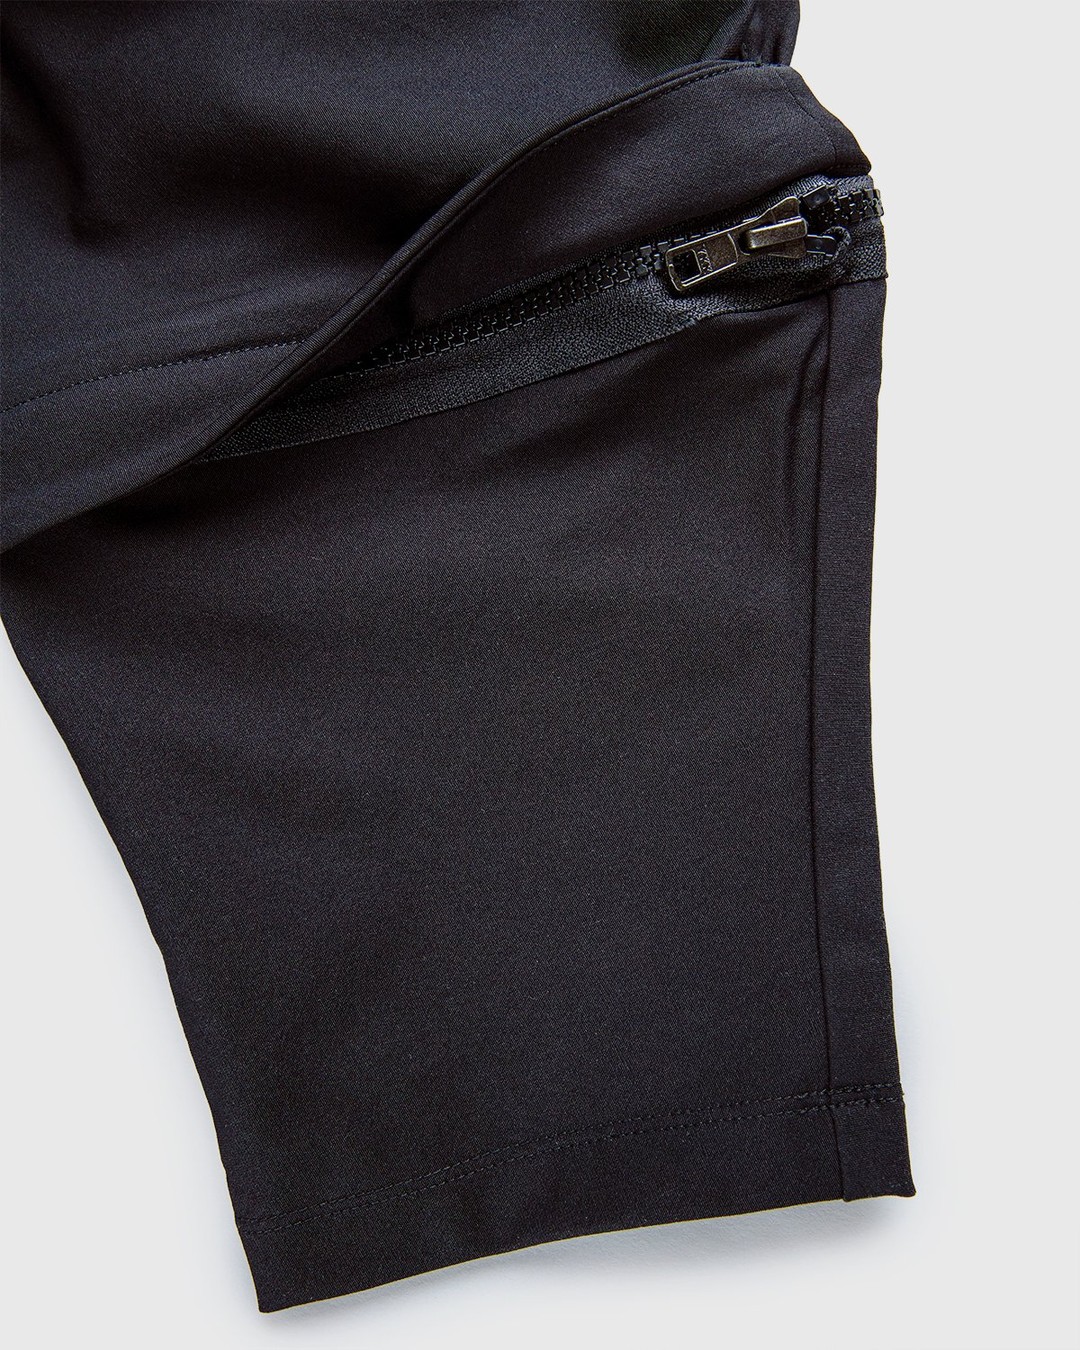 ACRONYM – P30A-DS Pants Black - Active Pants - Black - Image 7